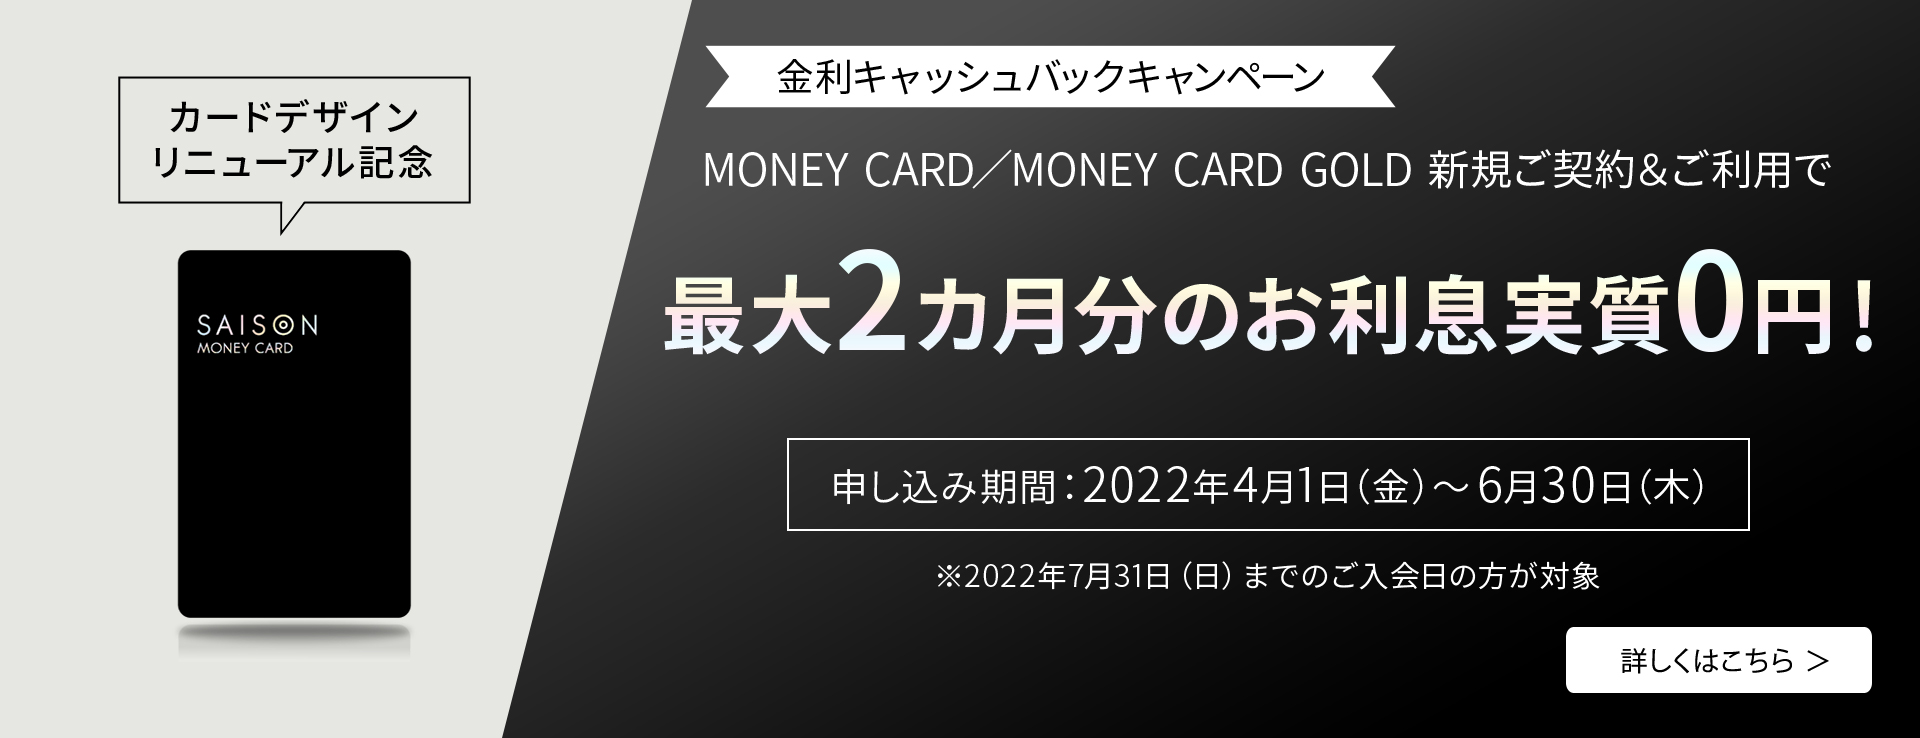 カードデザインリニューアル記念 金利キャッシュバックキャンペーン MONEY CARD／MONEY CARD GOLD 新規ご契約＆ご利用で最大2カ月分のお利息実質0円！ 申し込み期間：2022年4月1日（金）～6月30日（木）※2022年7月31日（日）までのご入会日の方が対象